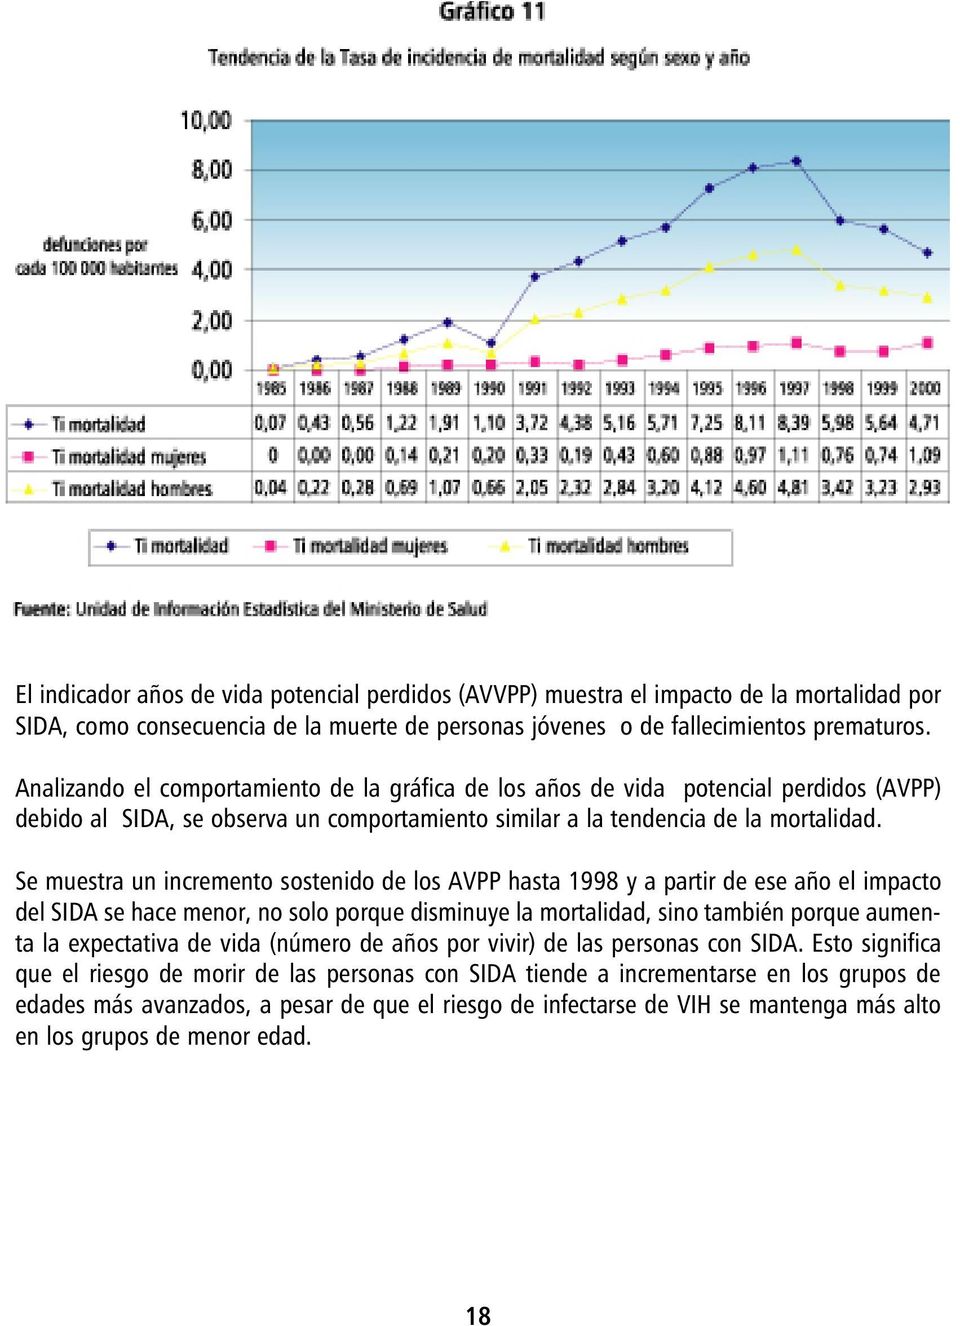 Se muestra un incremento sostenido de los AVPP hasta 1998 y a partir de ese año el impacto del SIDA se hace menor, no solo porque disminuye la mortalidad, sino también porque aumenta la expectativa